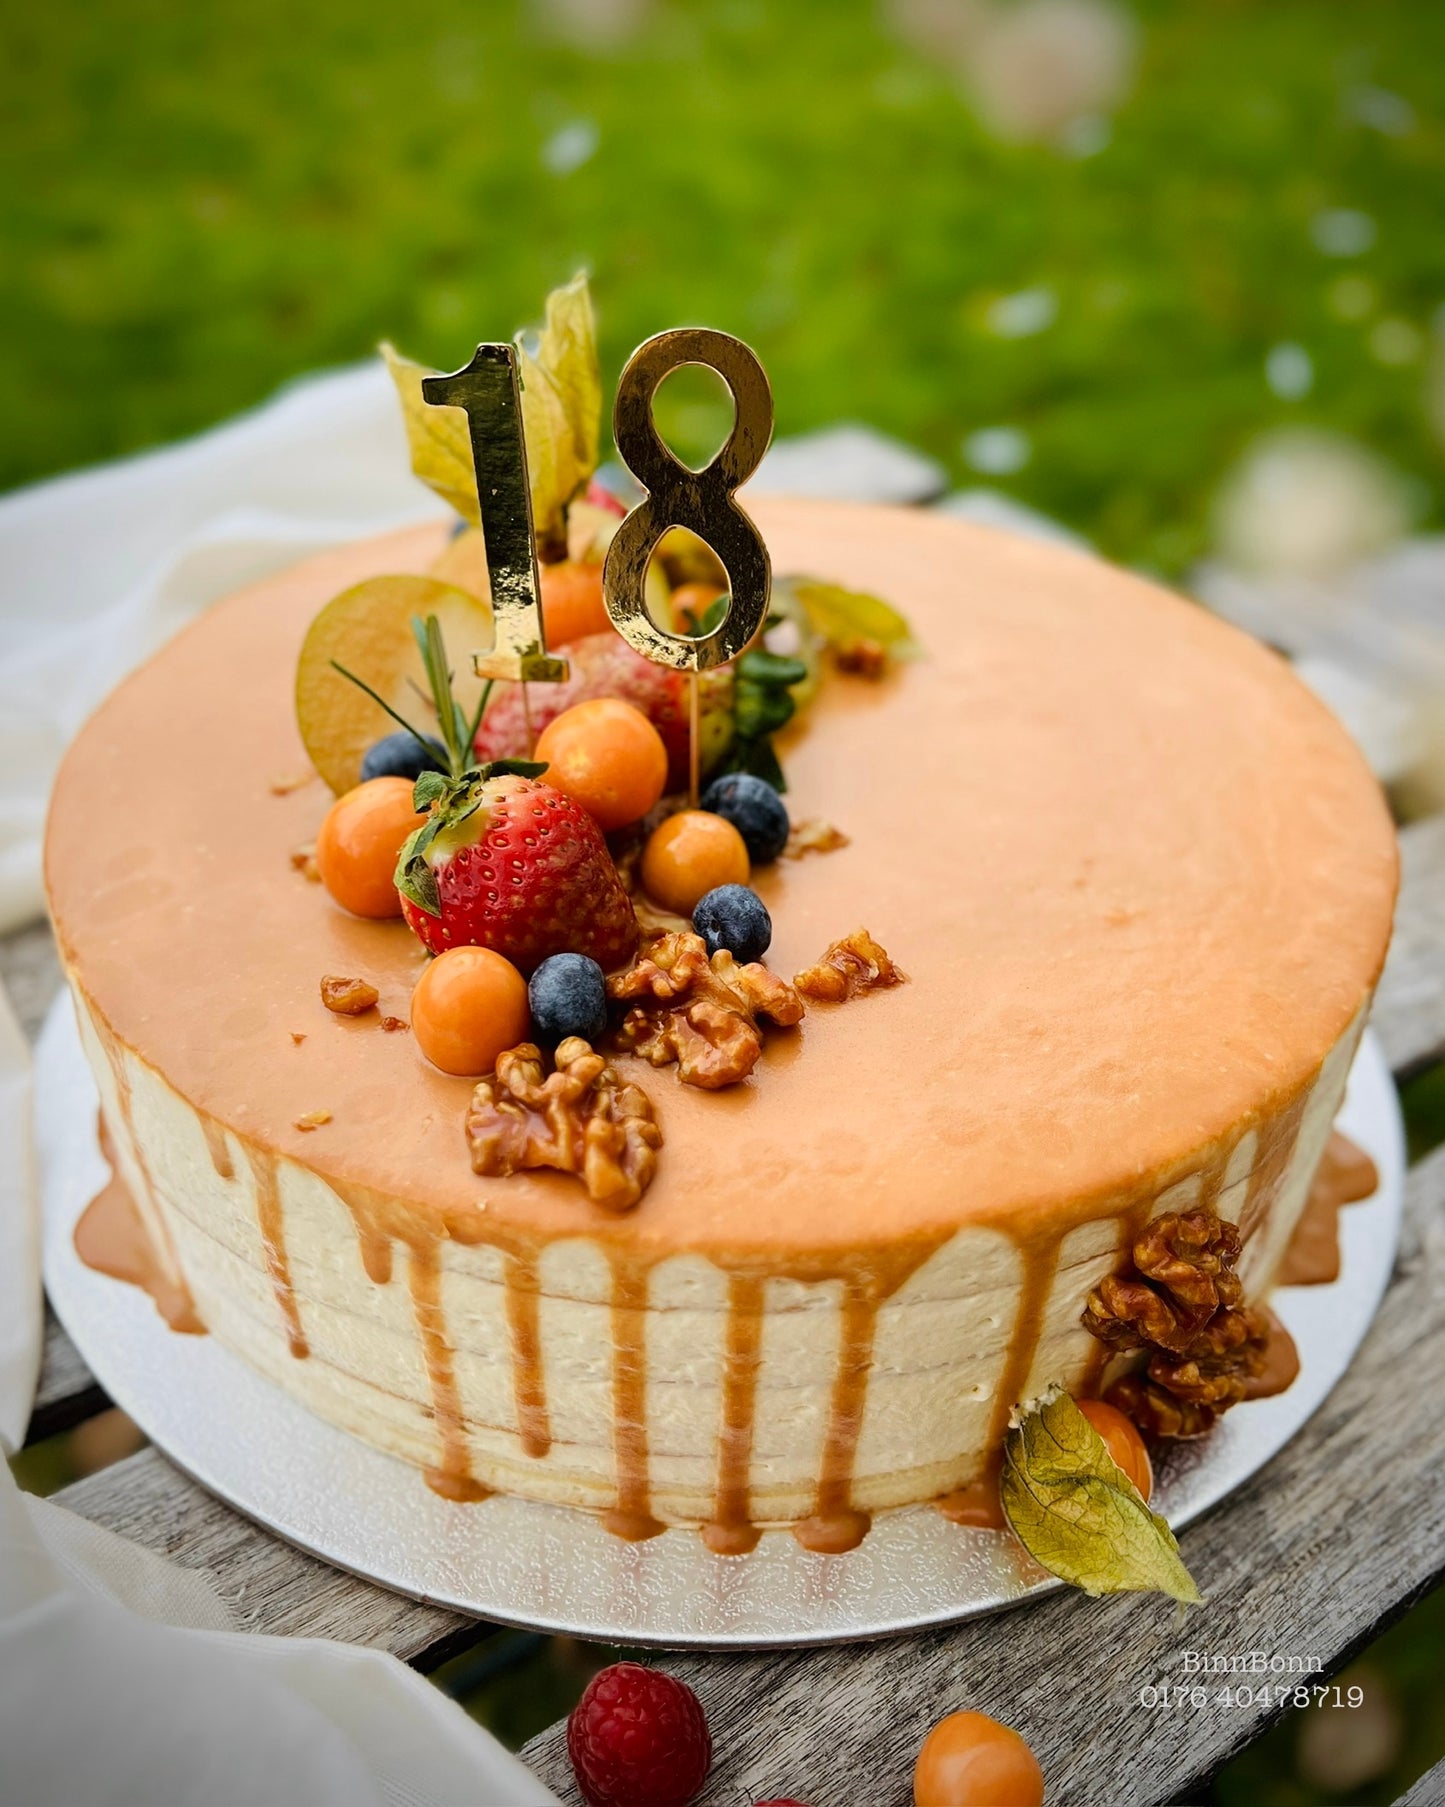 27. Torte "Caramel Love" mit Karamellsauce und verschiedenen frischen Früchten 26 cm